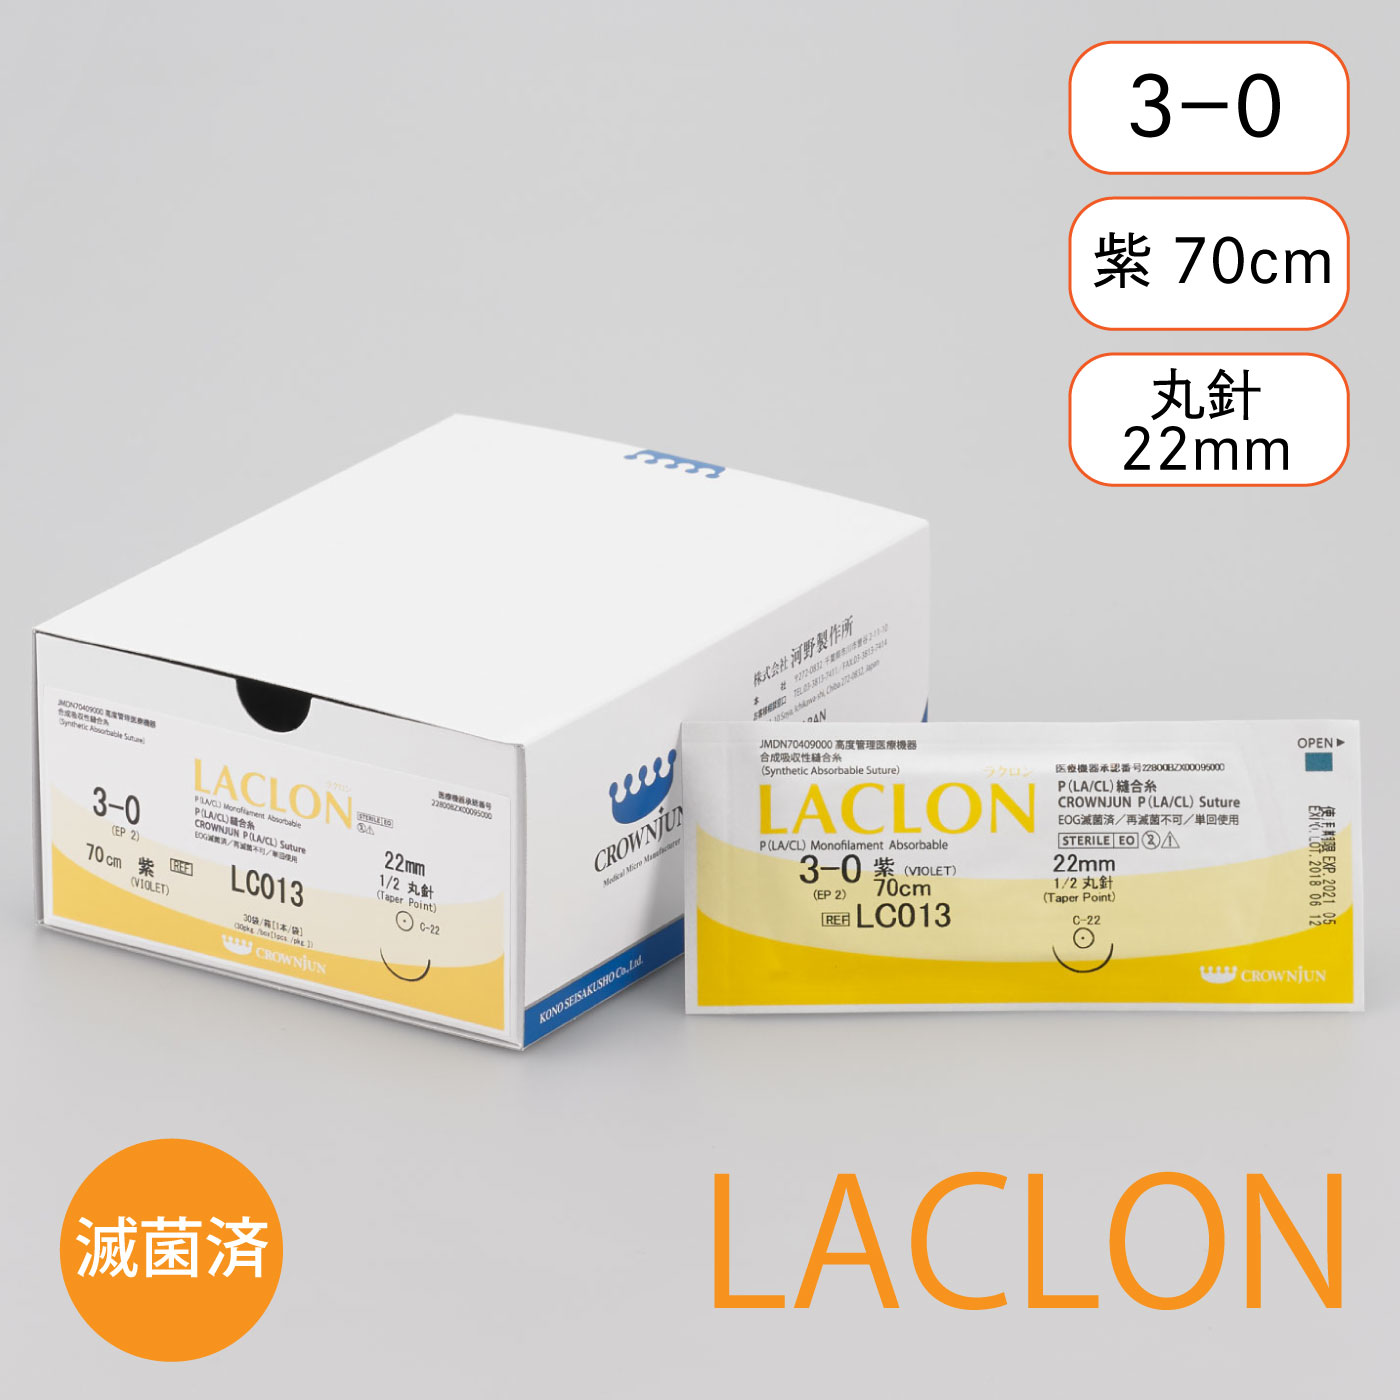 針付ラクロン C-22mm/3-0/70cm/紫/モノフィラメント吸収糸【LC013】